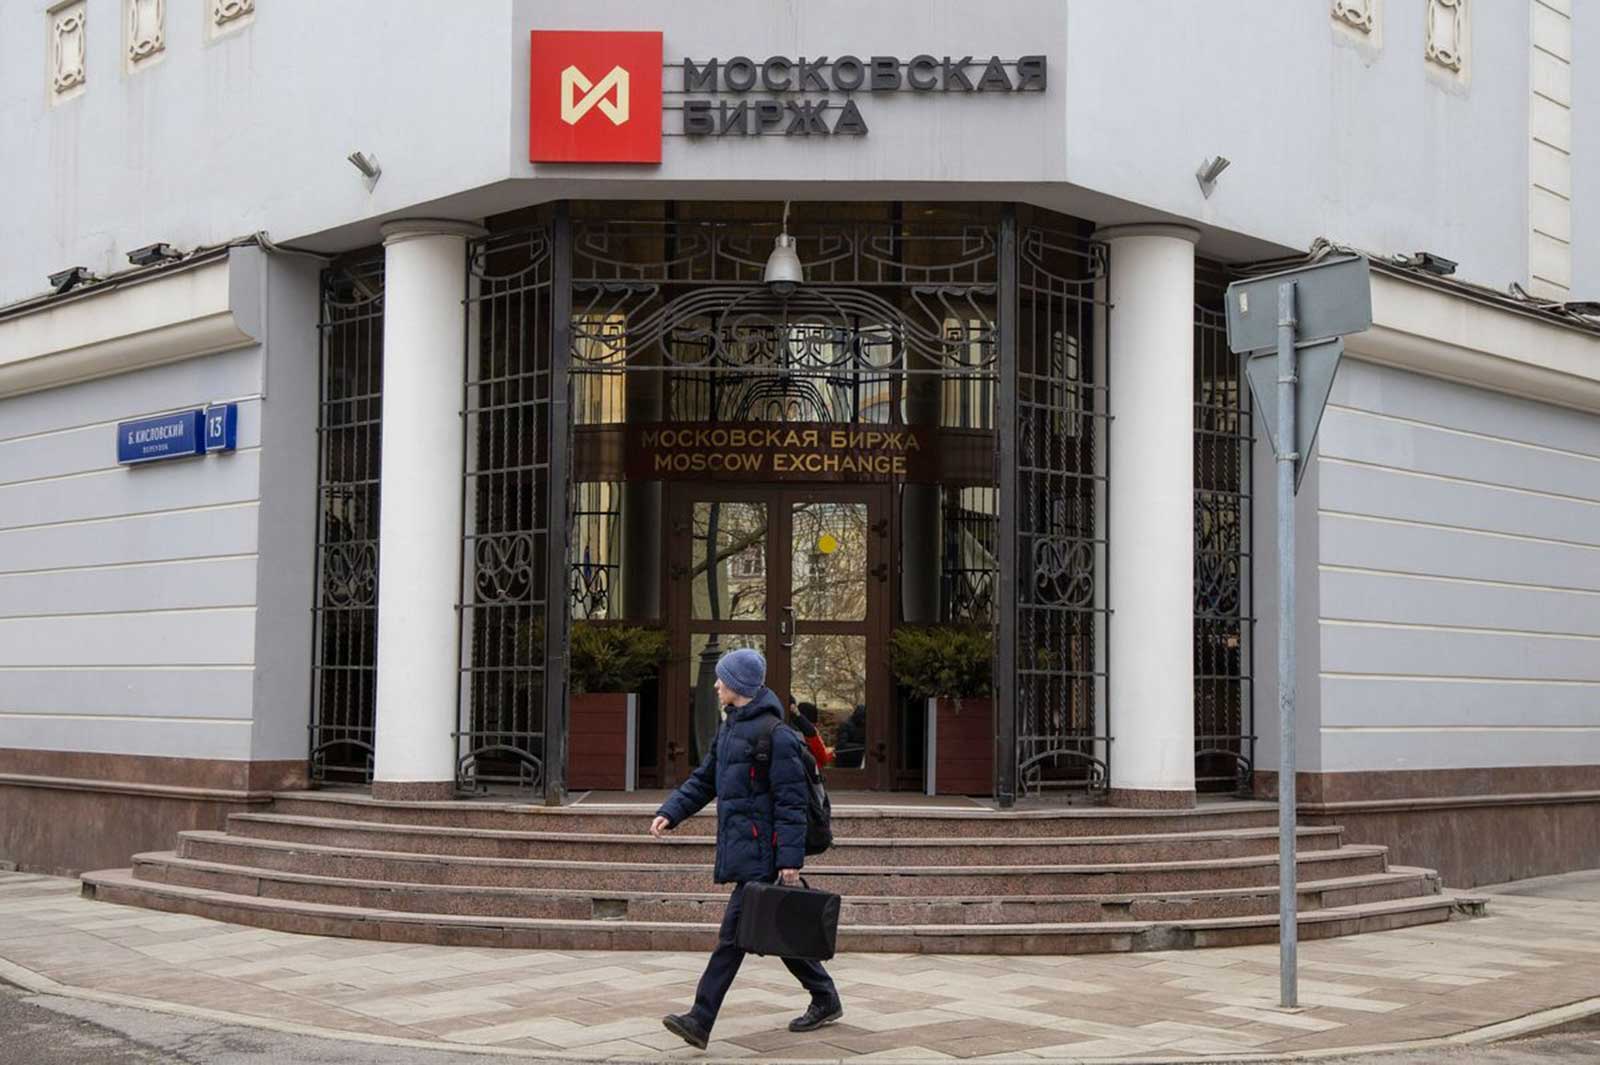 روسيا تبدأ بيع وشراء اليوان والعملات الأجنبية الأخرى ببورصة موسكو